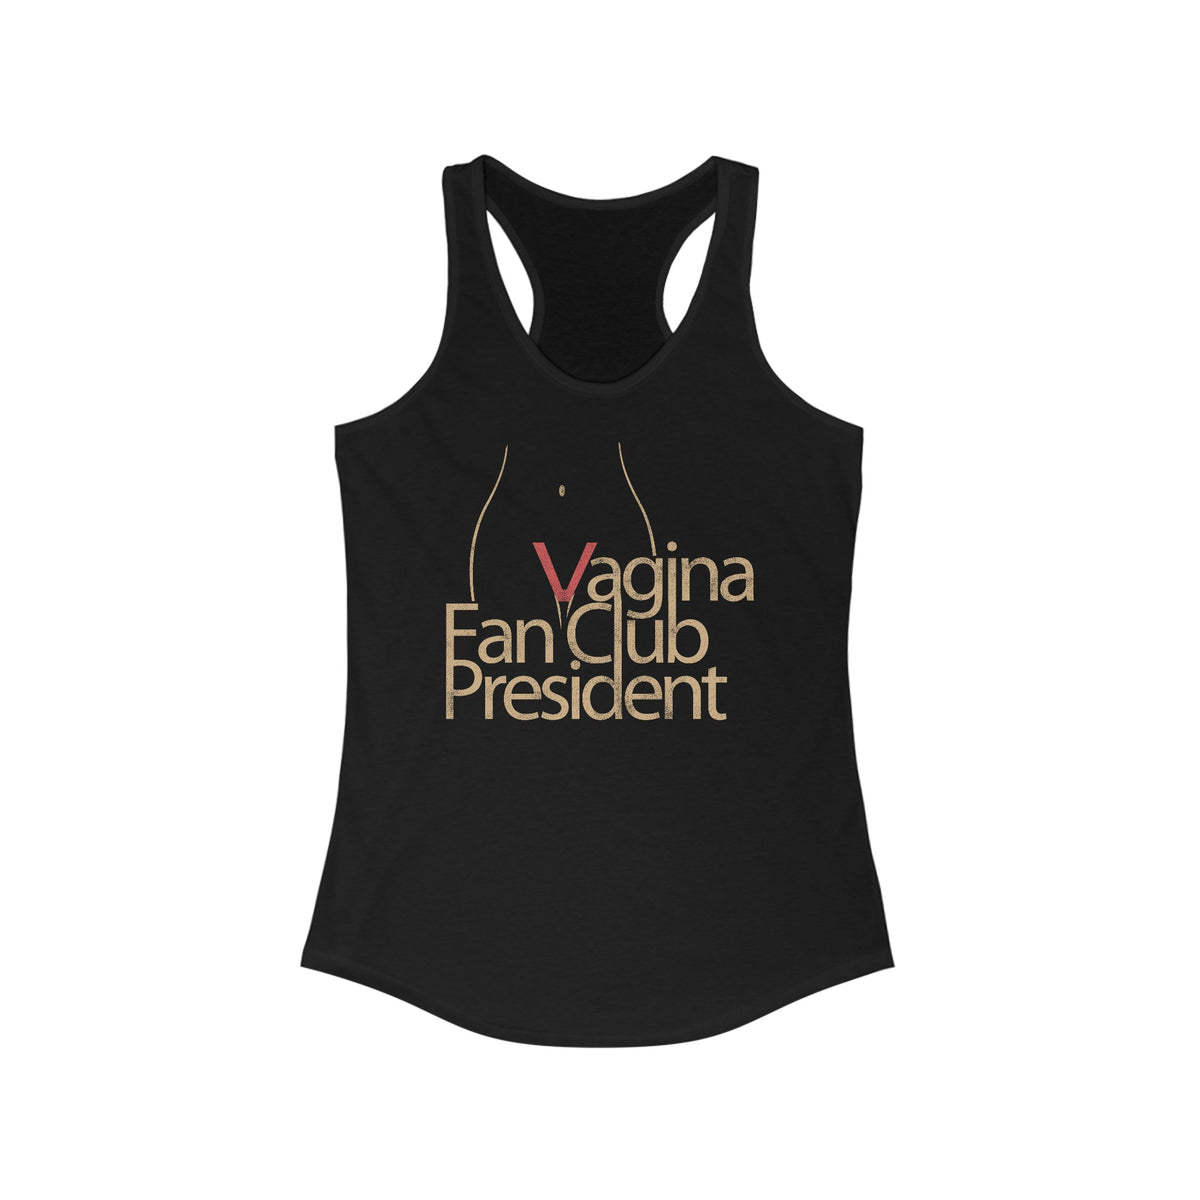 Vagina Fan Club President - Women’s Racerback Tank